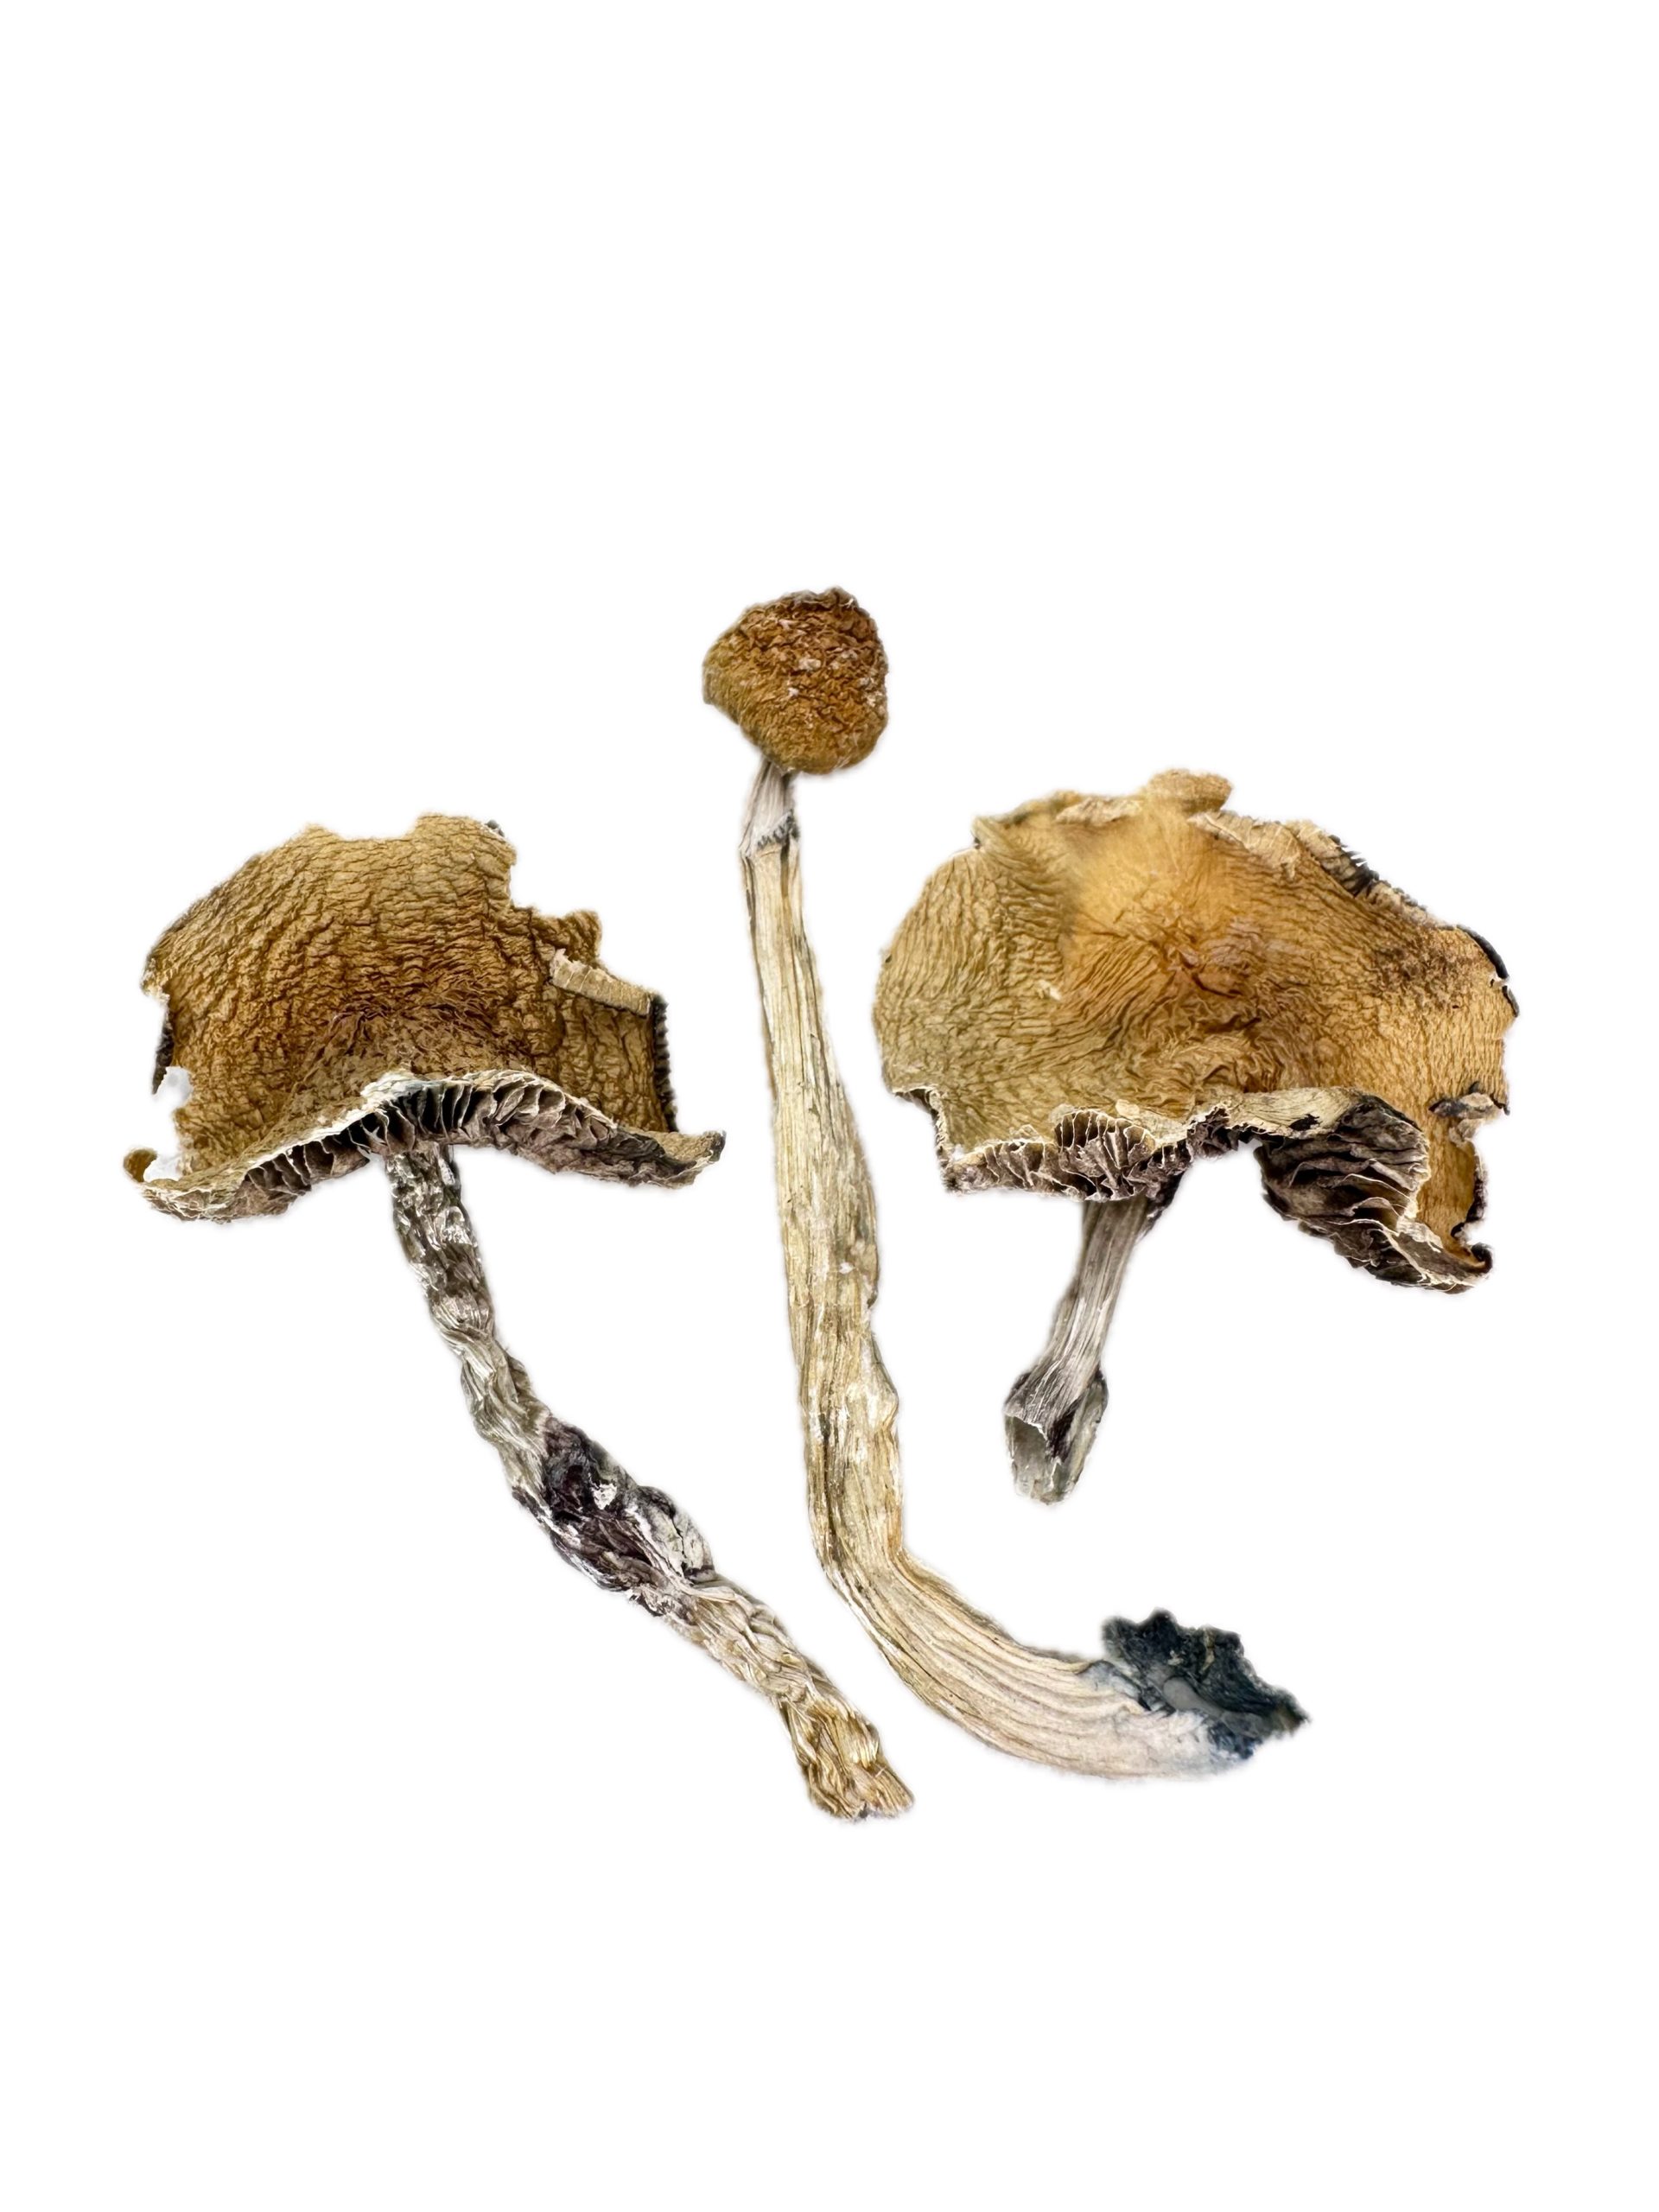 Emperor – Dry Mushrooms